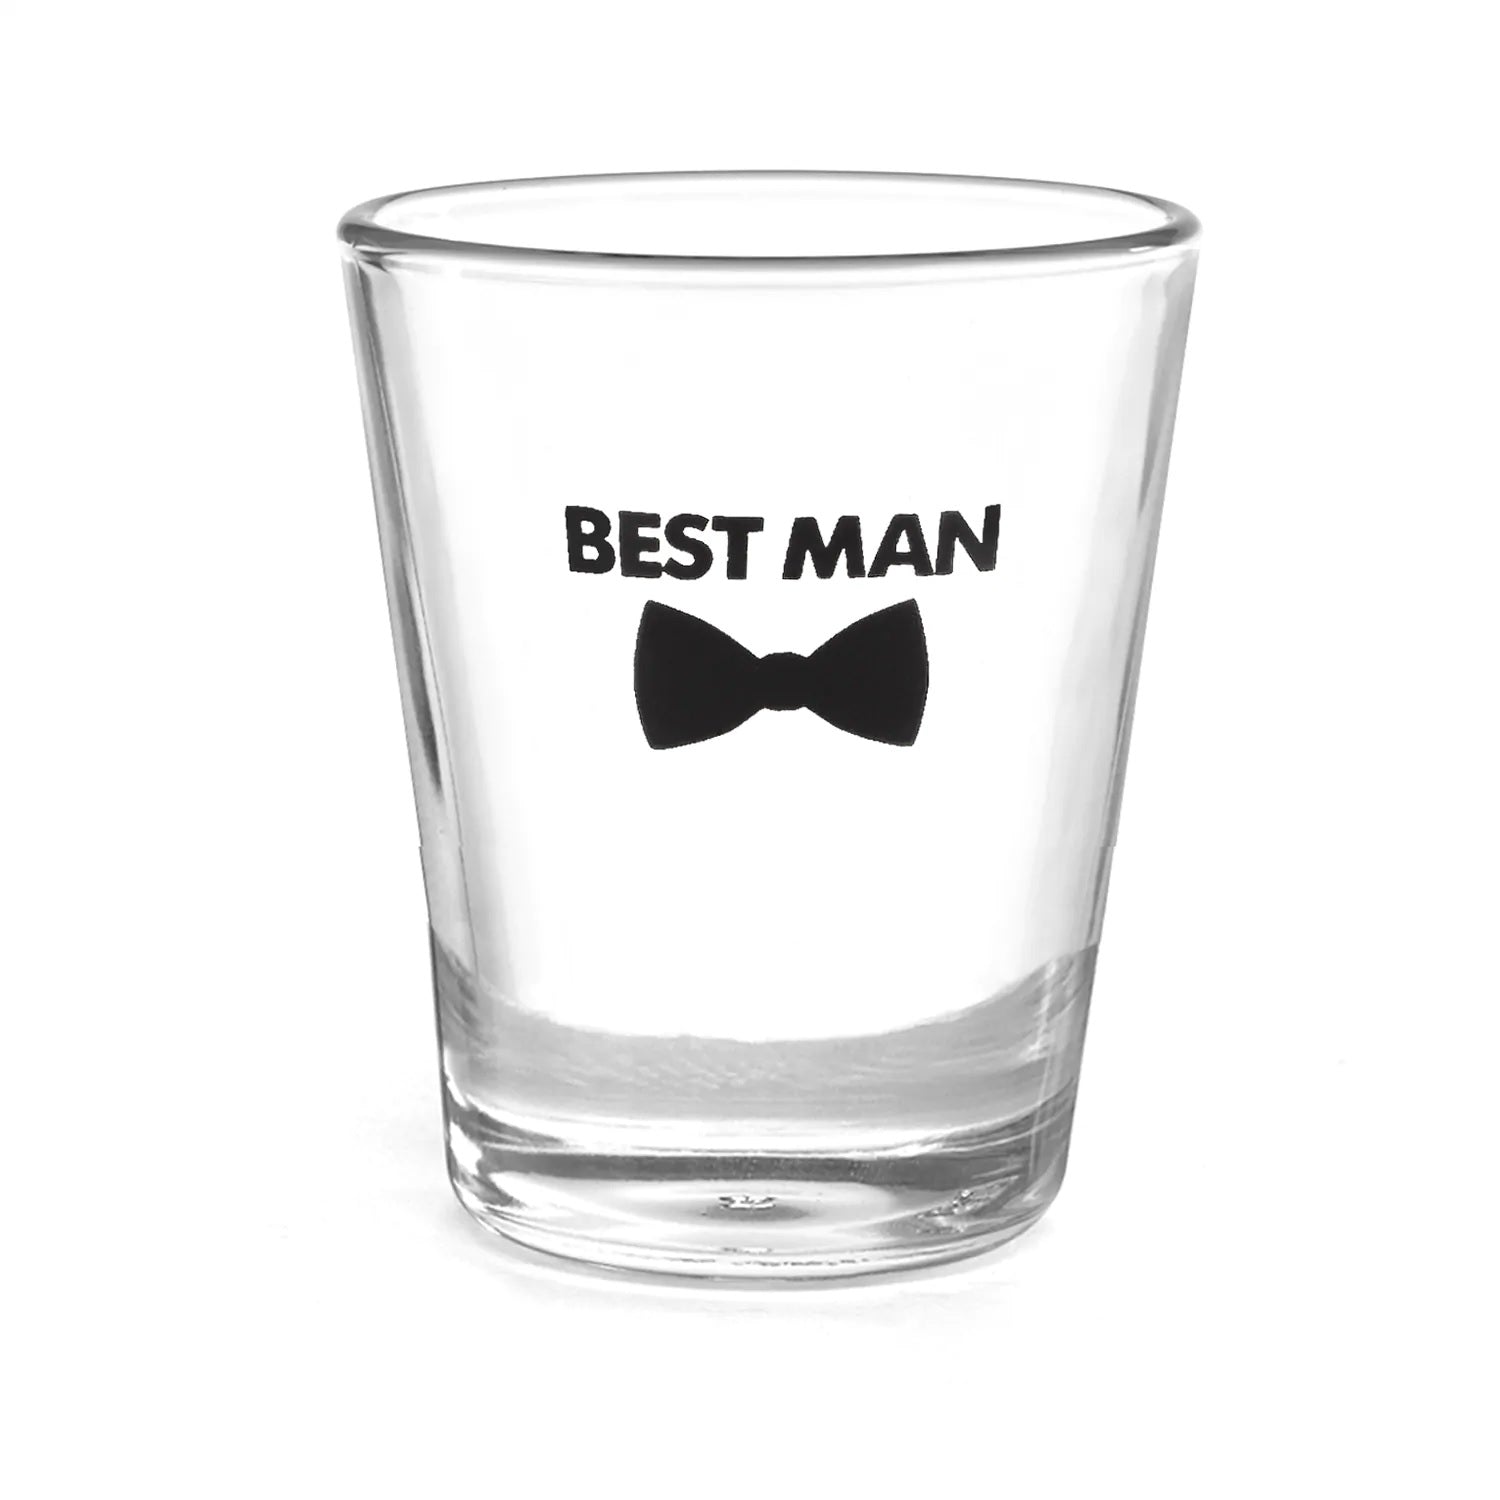 Best Man Shot Glass